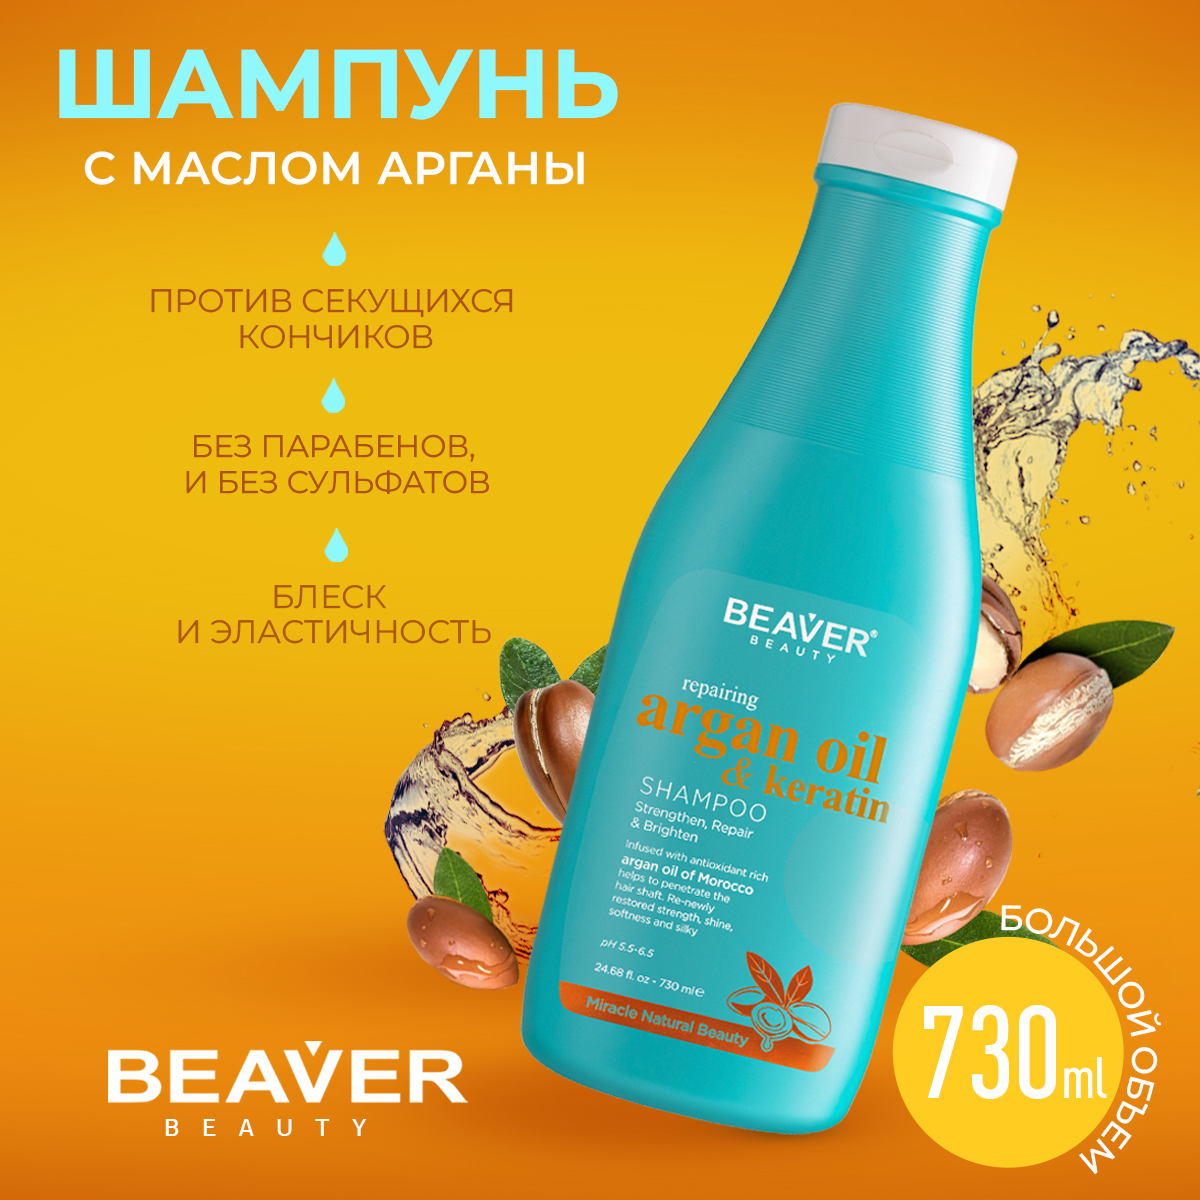 Шампунь Beaver для сильно поврежденных волос с маслом арганы и кератином 730 мл